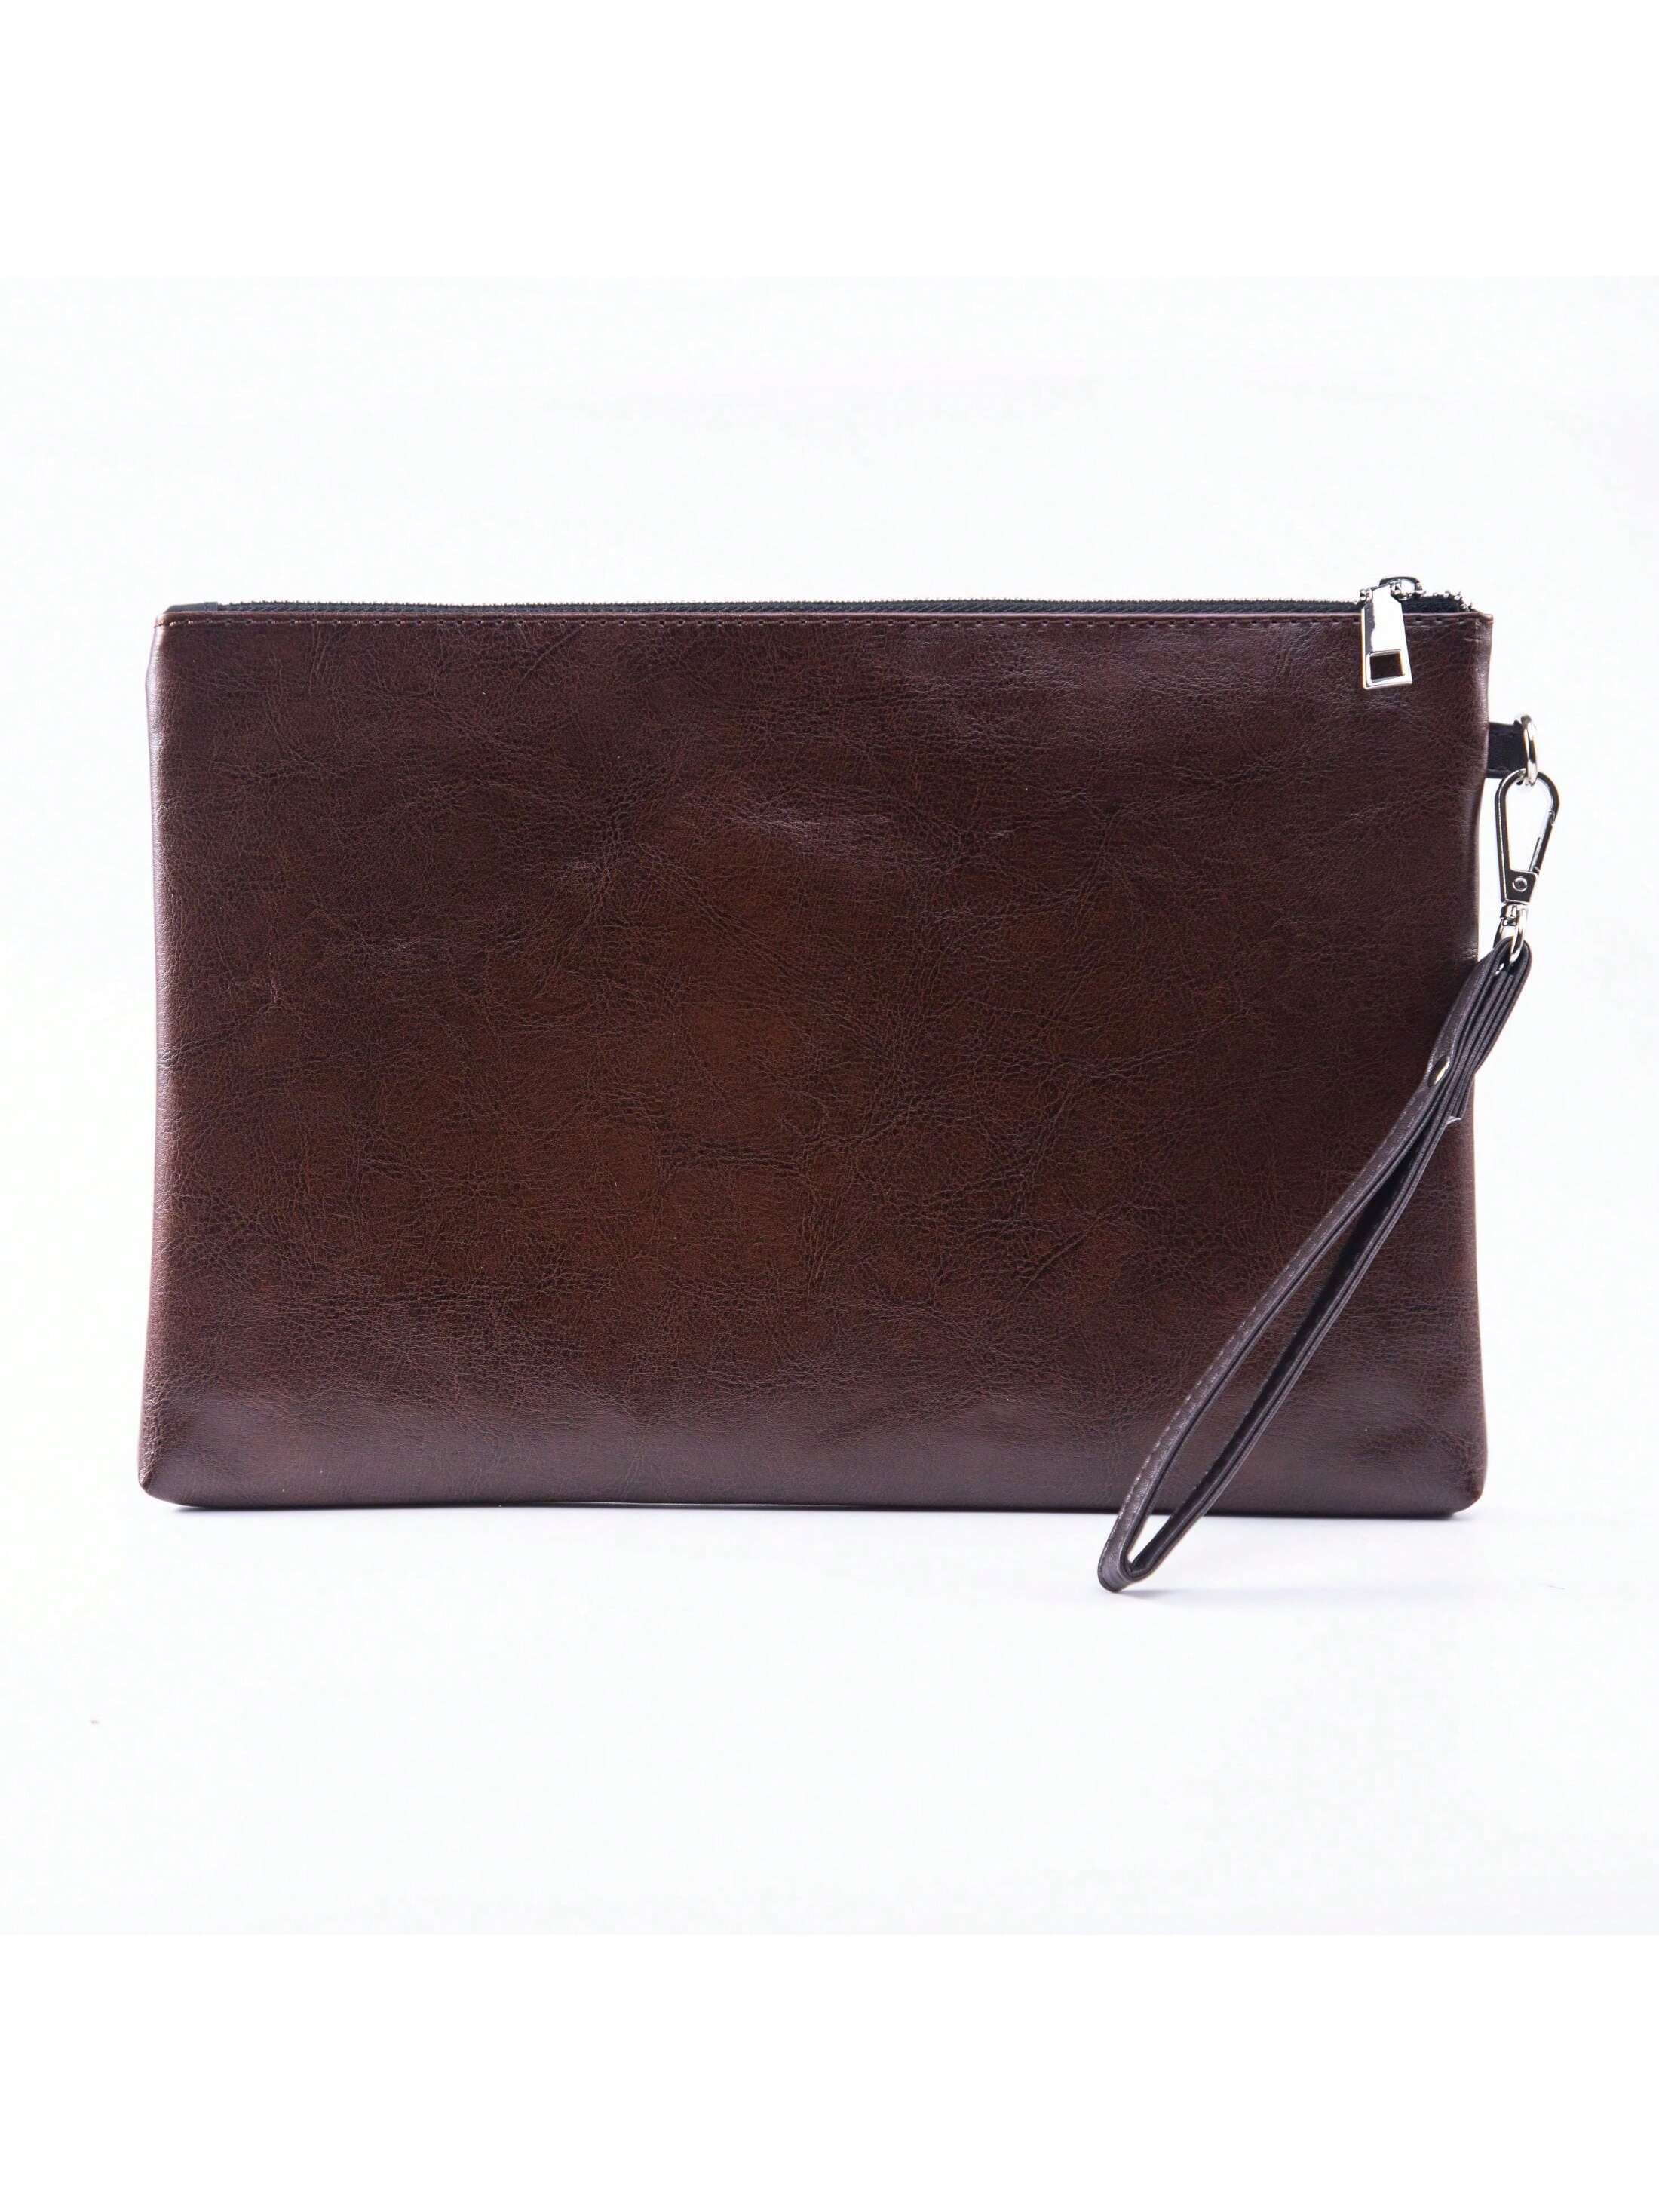 Мужская сумка-клатч-конверт Водонепроницаемая исходящая сумка Сумка для документов Сумка для планшета 13 дюймов, коричневый